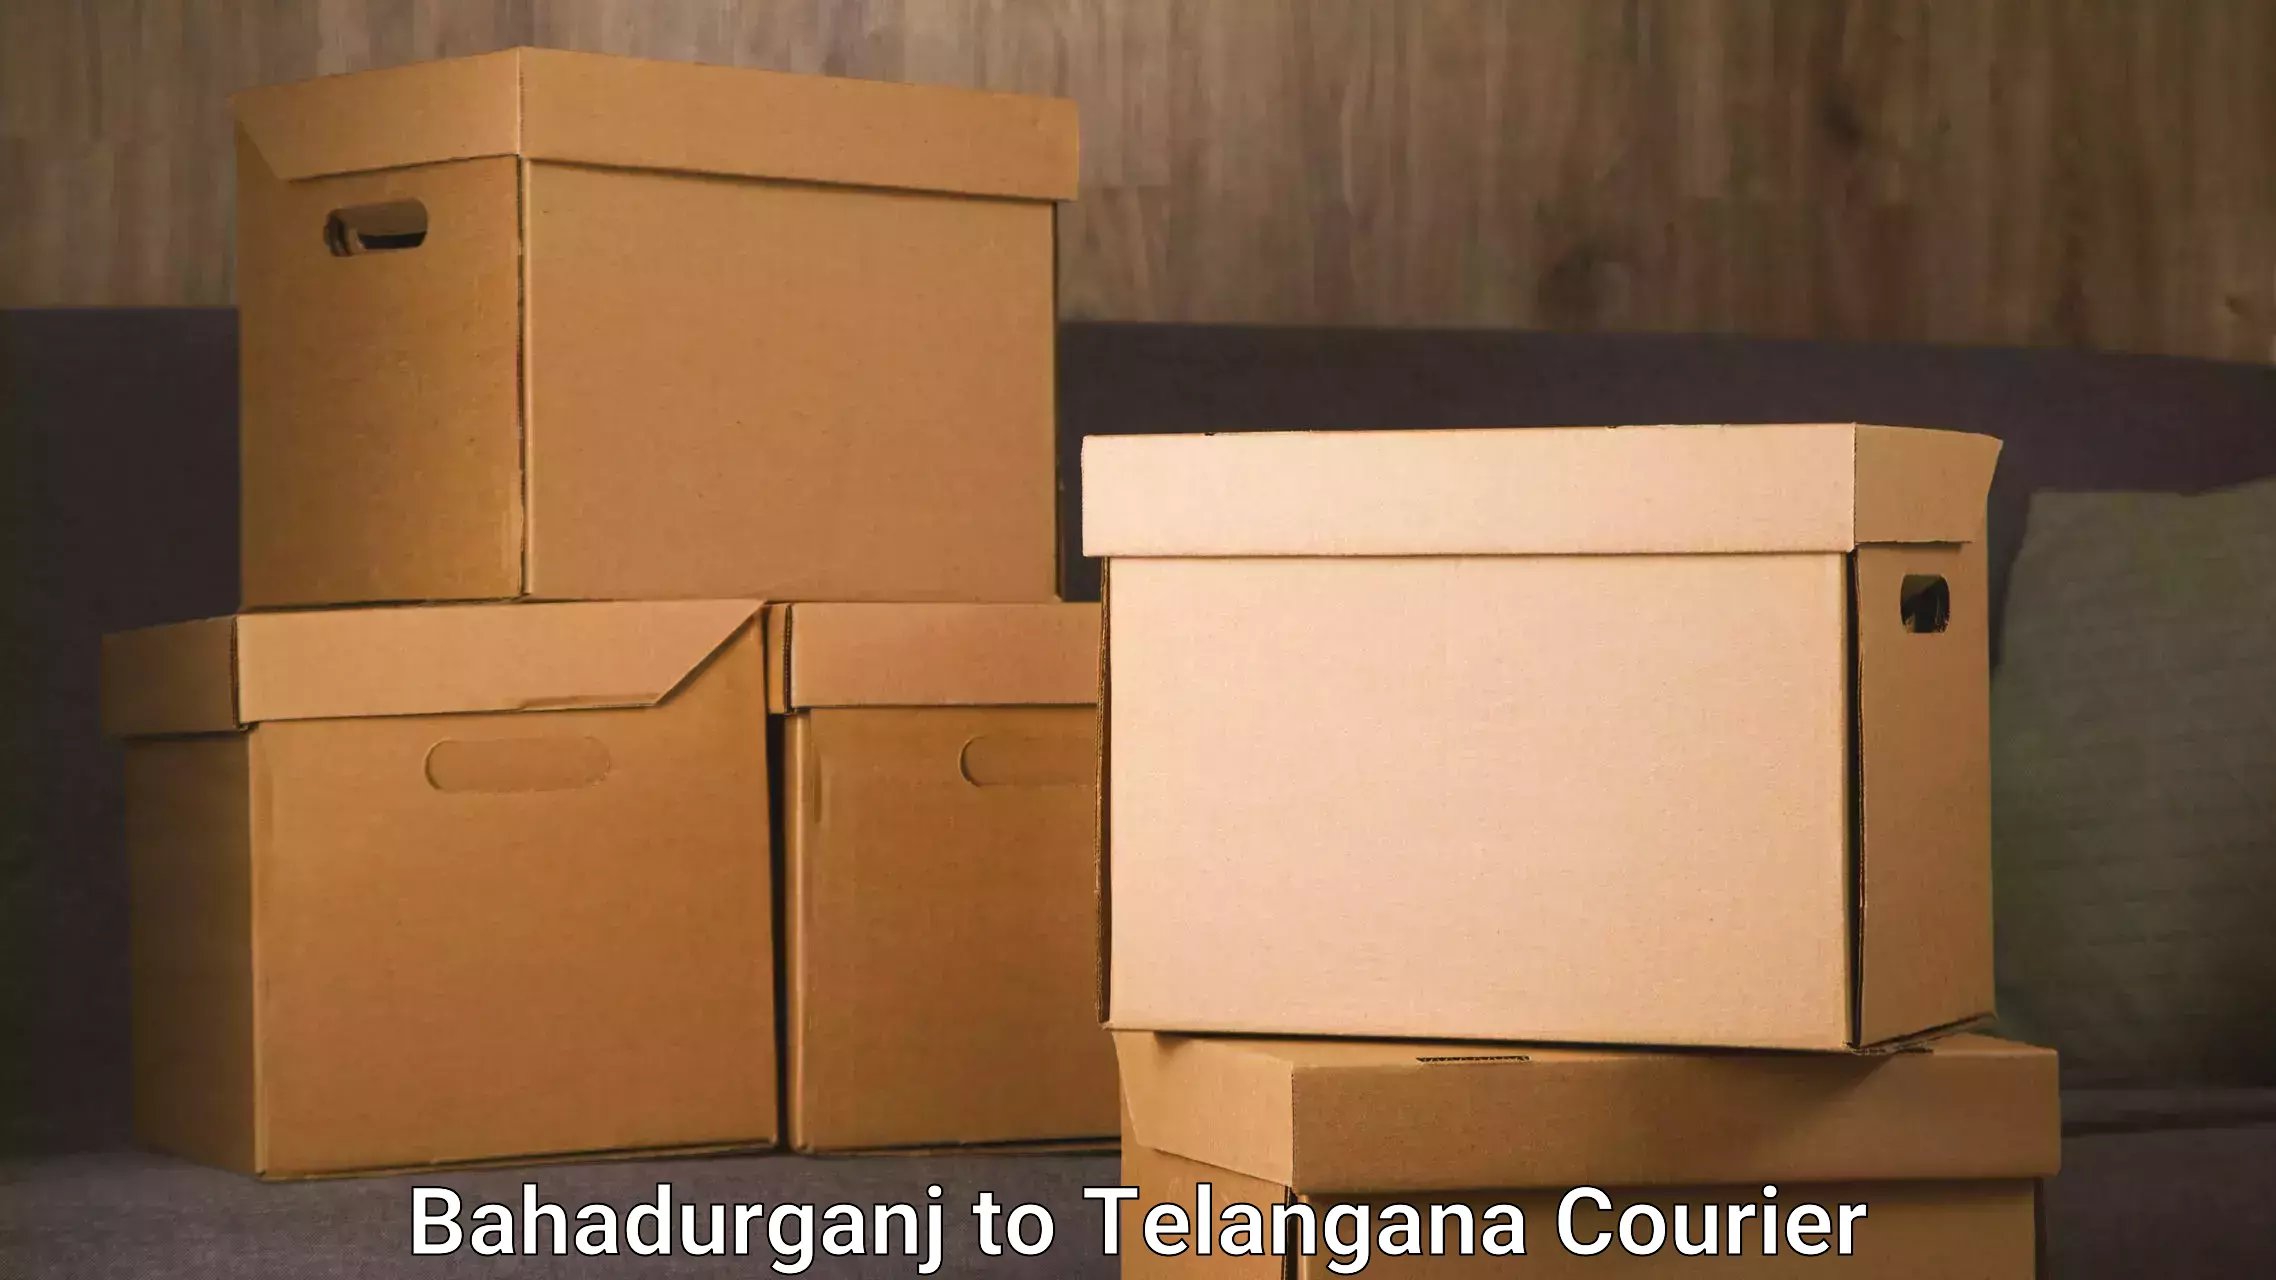 Furniture moving experts Bahadurganj to Patancheru